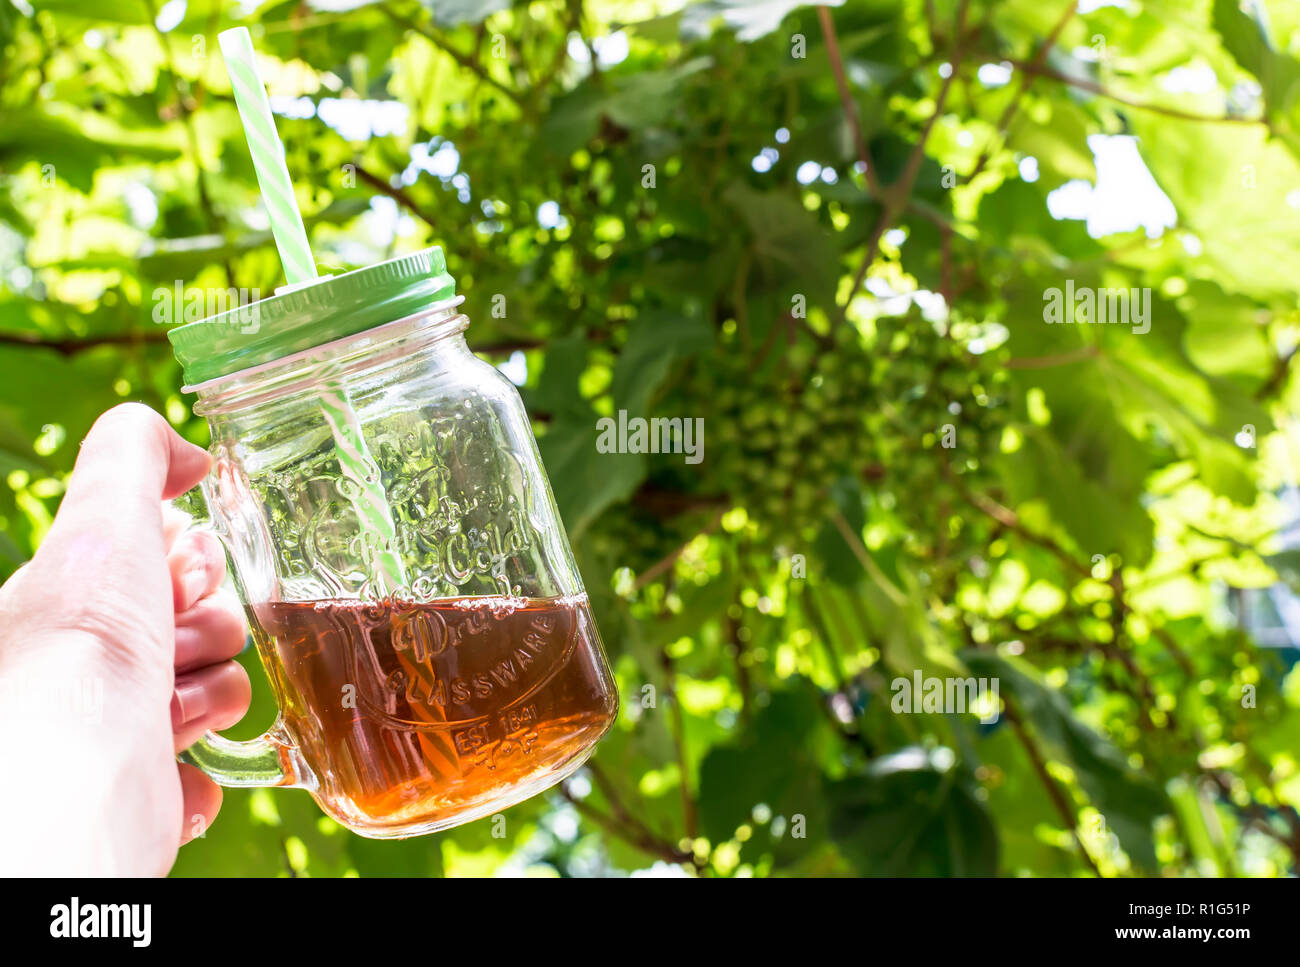 Hand mit einem Glas Becher kalten Tee mit Stroh gegen grüne vined Hintergrund. Sonnigen Sommer Hintergrund Konzept. Stockfoto